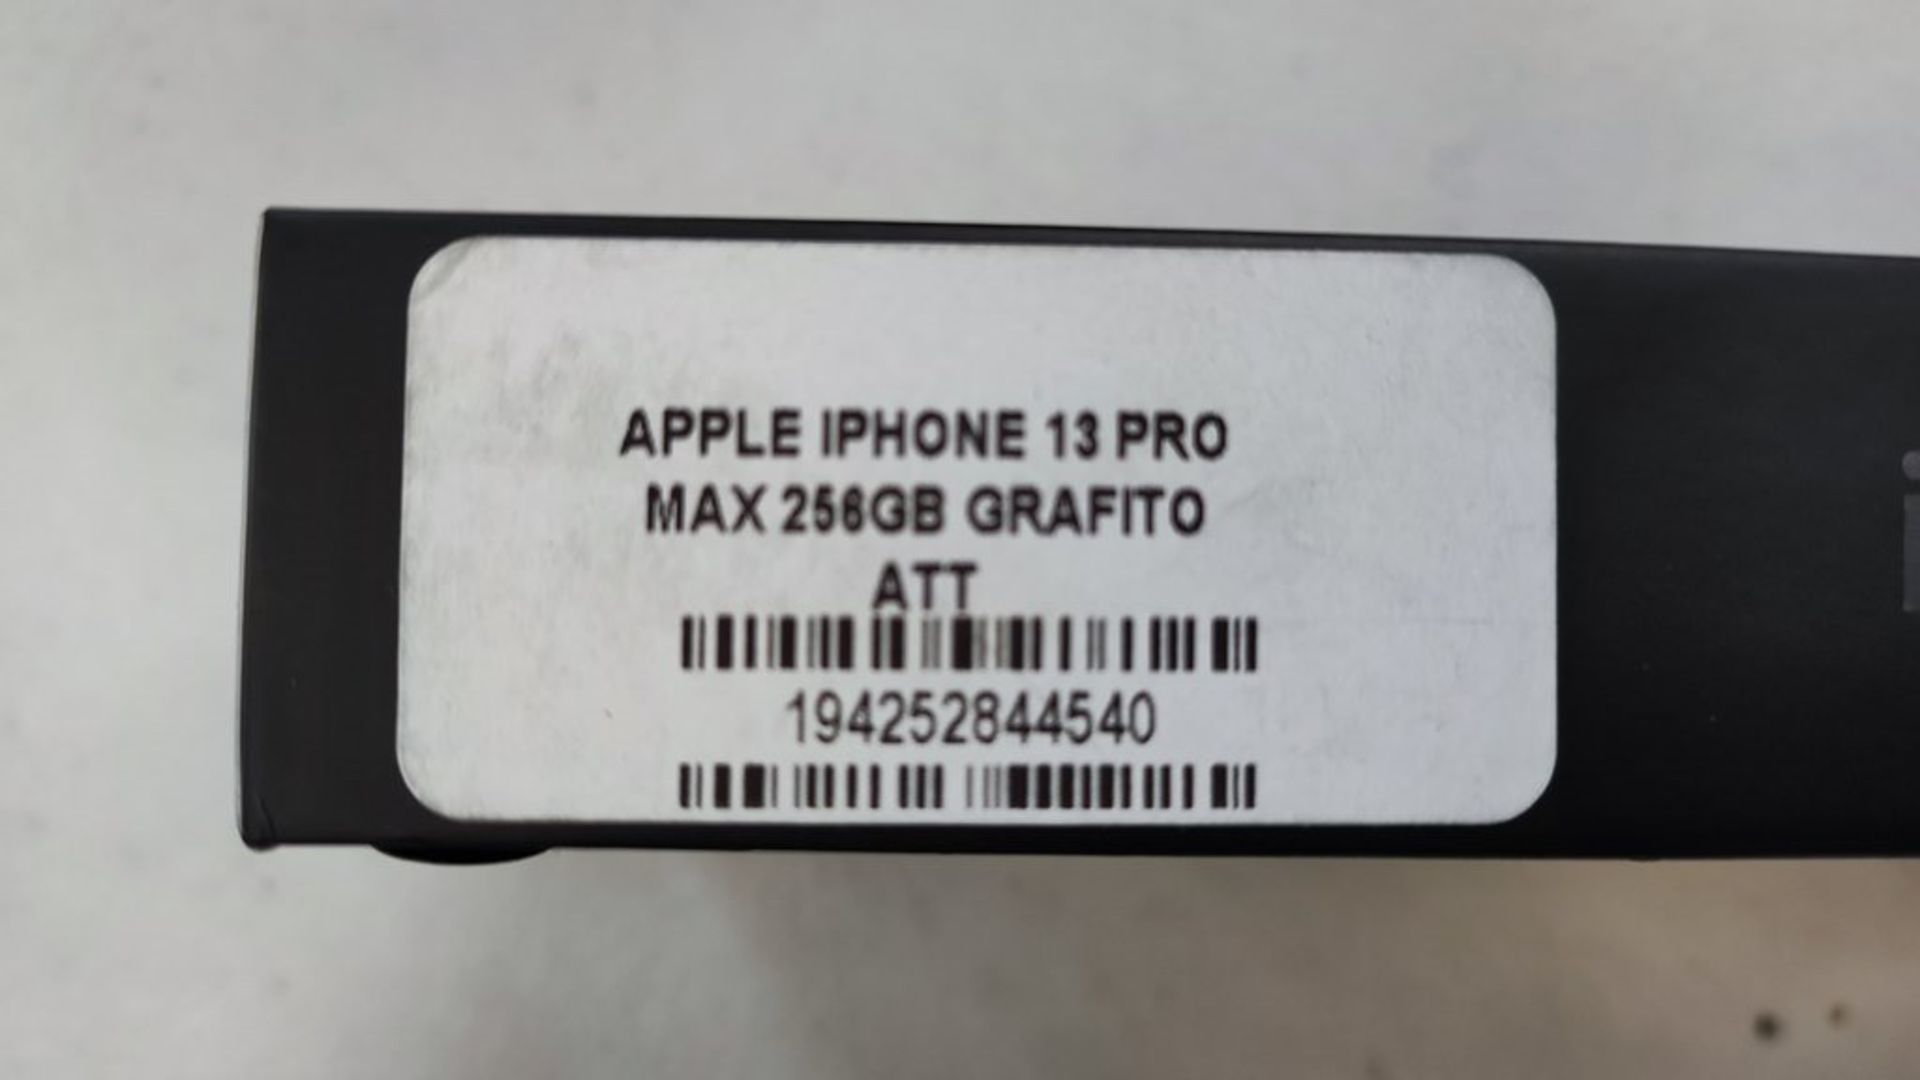 1 Teléfono Celular Marca Apple IPhone 13 Color Negro y Audífonos inalámbricos color blanco - Image 5 of 9